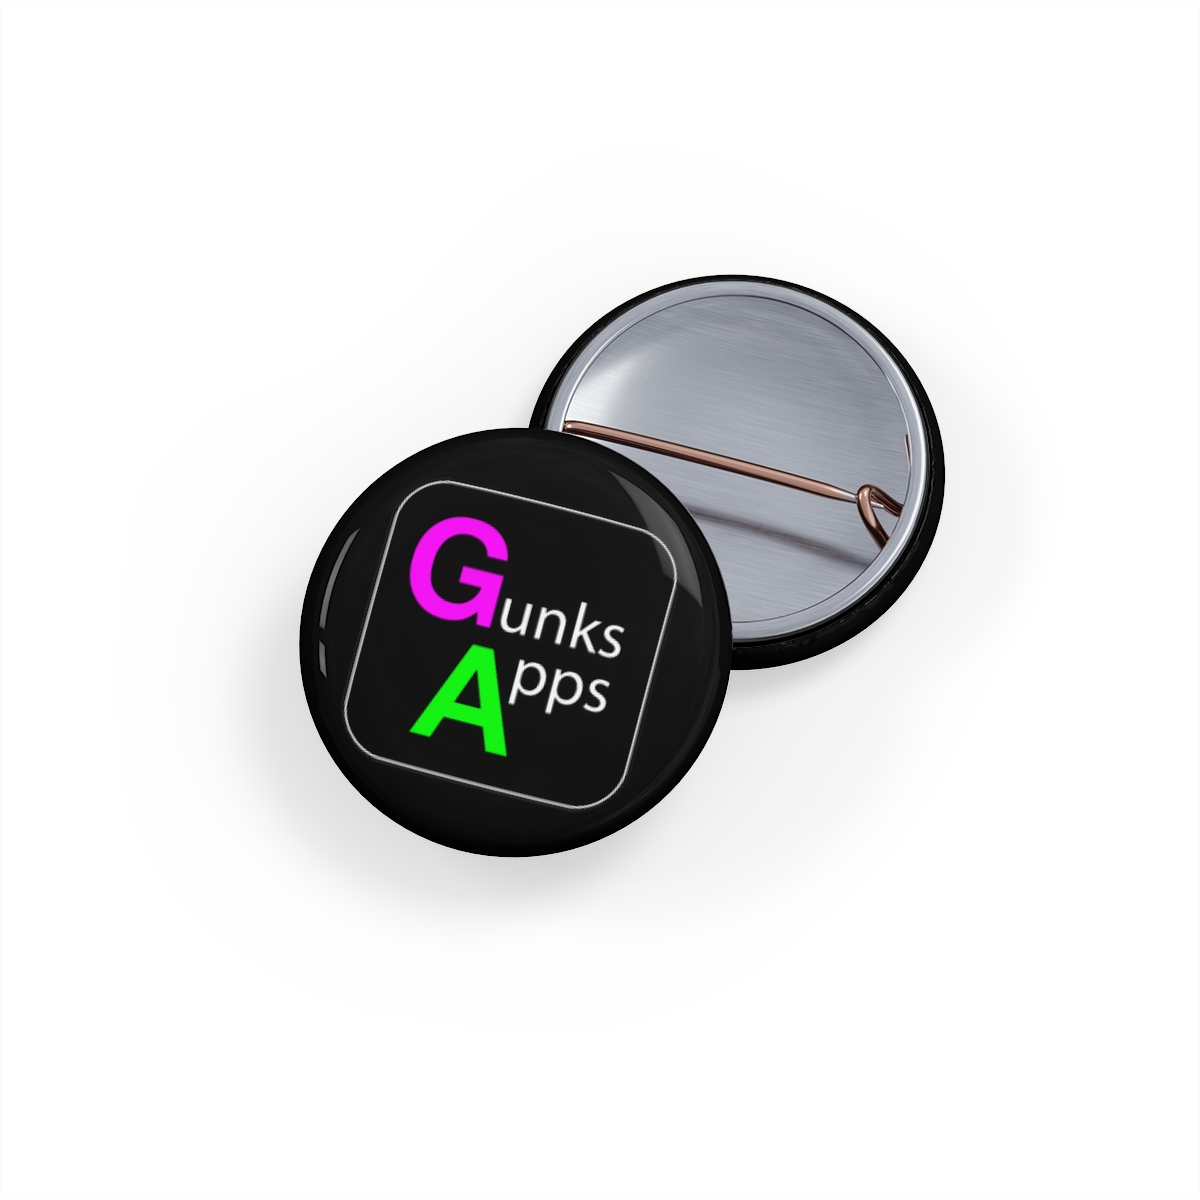 Gunks Apps Round Pins